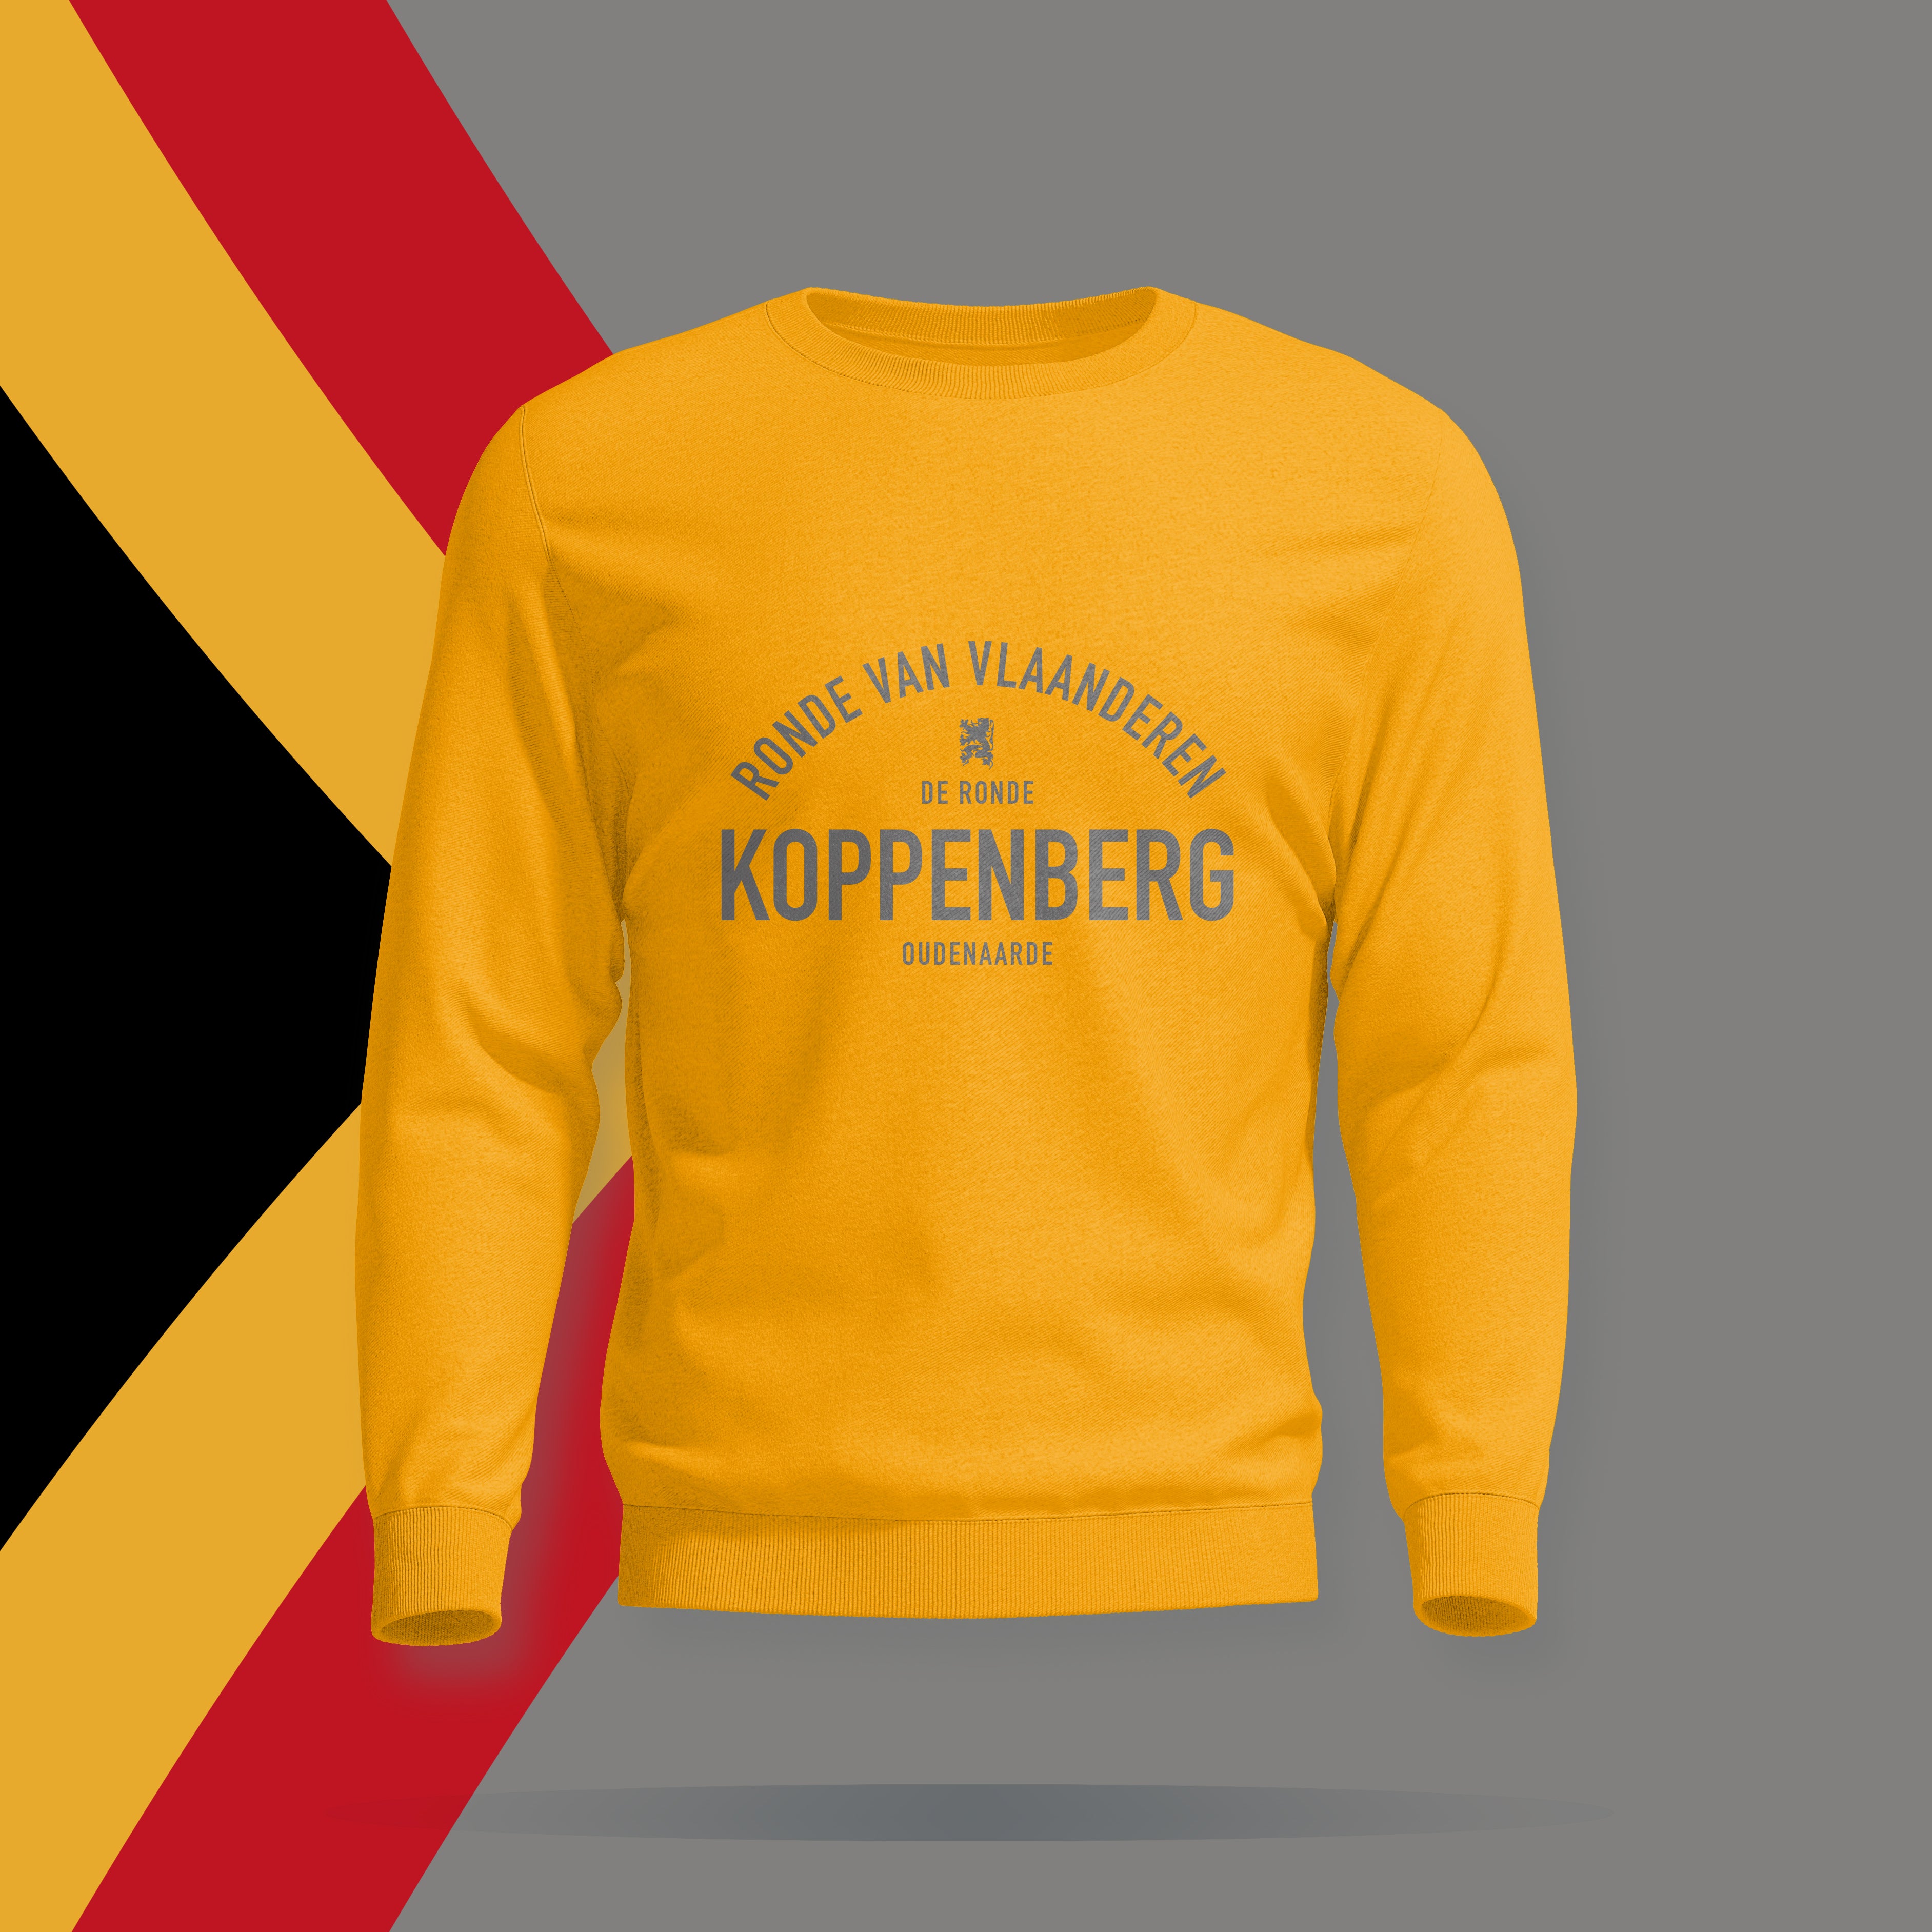 Koppenberg, Ronde van Vlaanderen - Sweatshirt